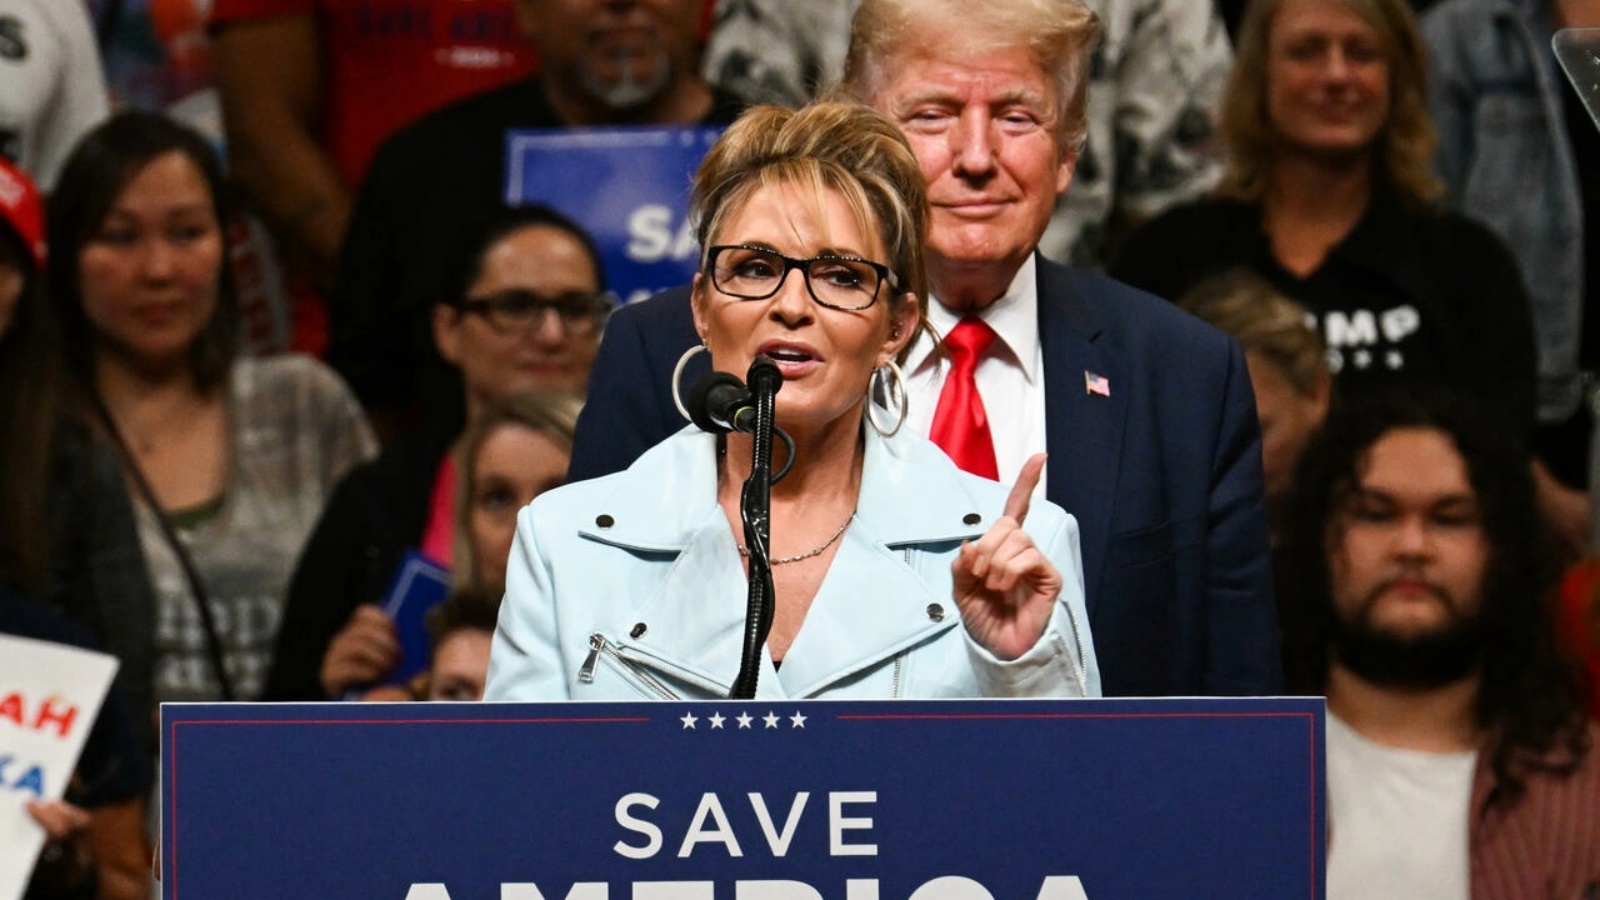 سارة بايلن، المرشحة لمقعد في مجلس النواب الأميركي، تلقي كلمة في مهرجان انتخابي وخلفها الرئيس السابق دونالد ترامب، في 9 يوليو 2022 